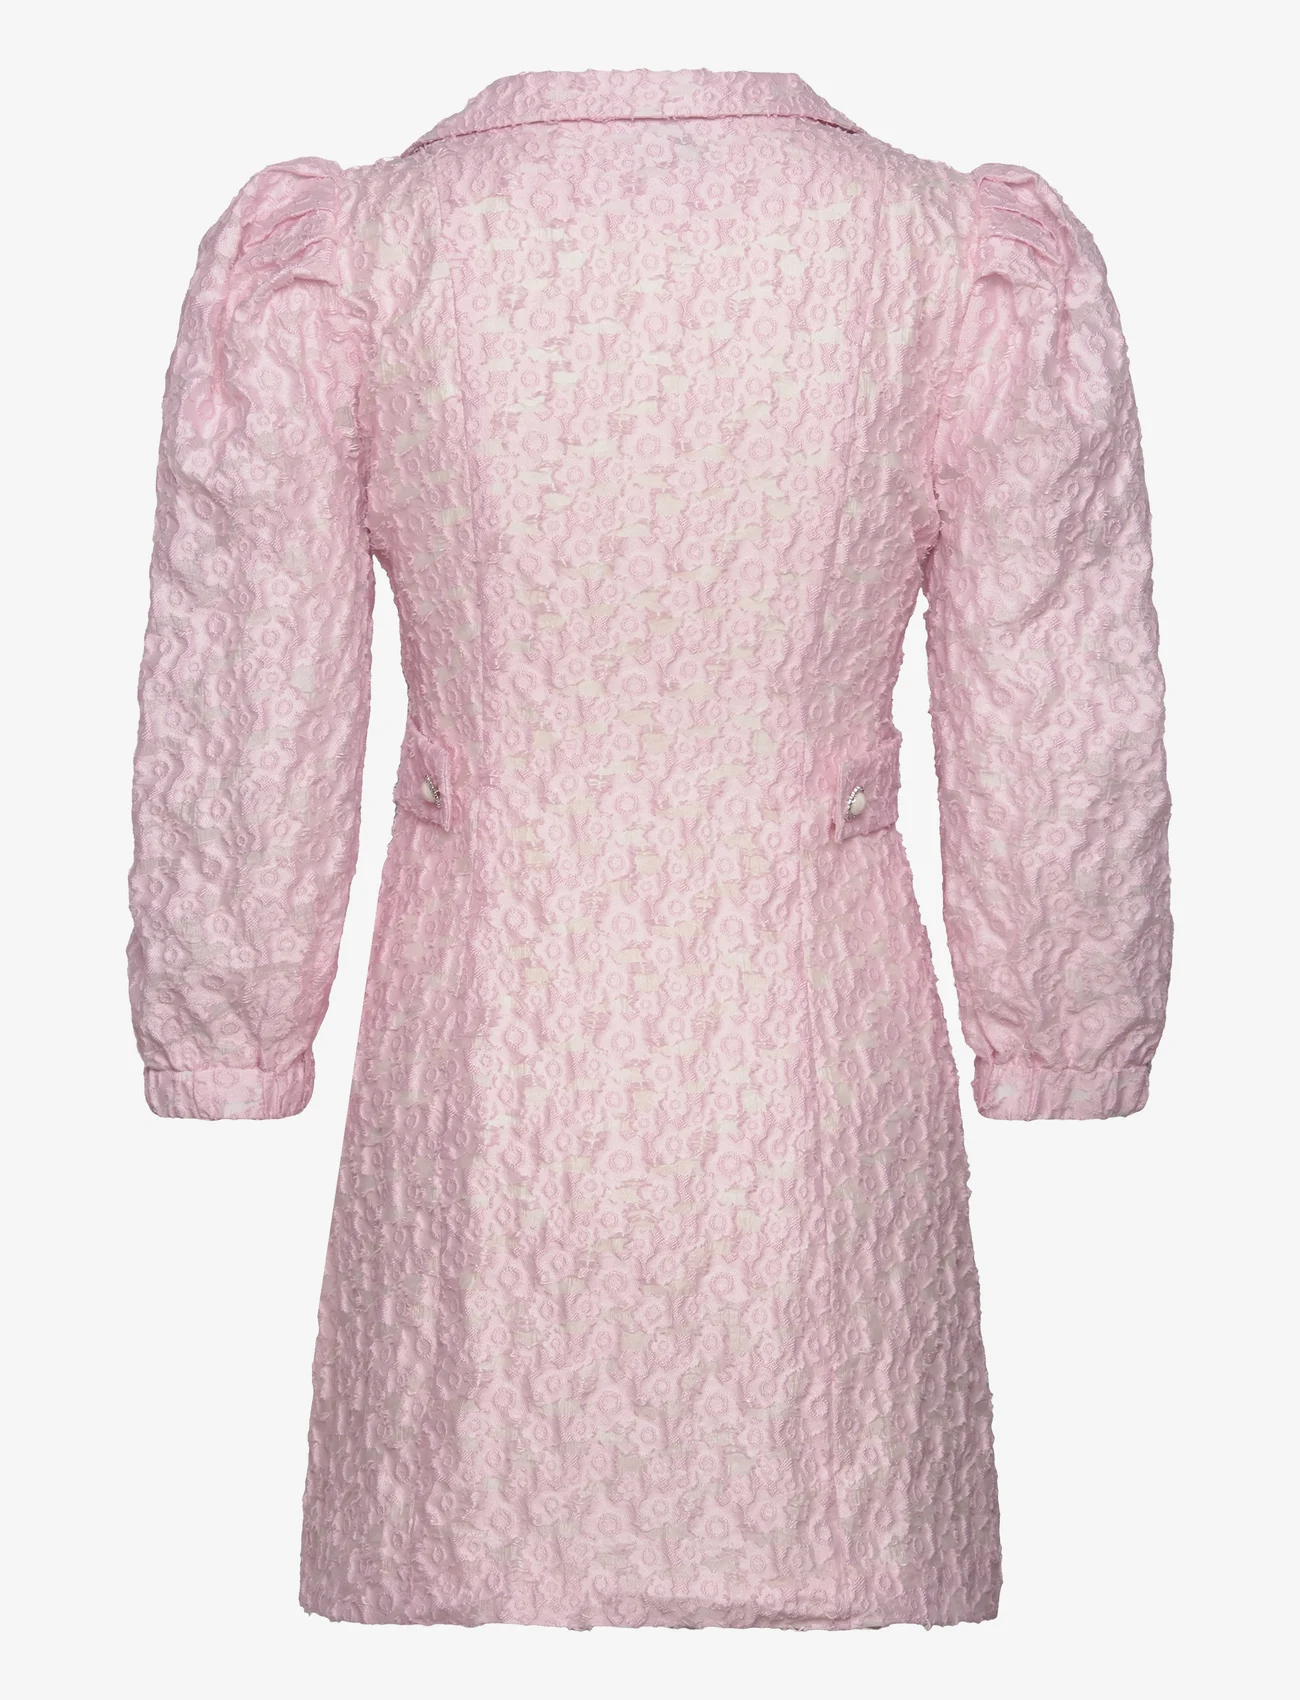 MAUD - Talia Blazer Dress - festkläder till outletpriser - light pink - 1